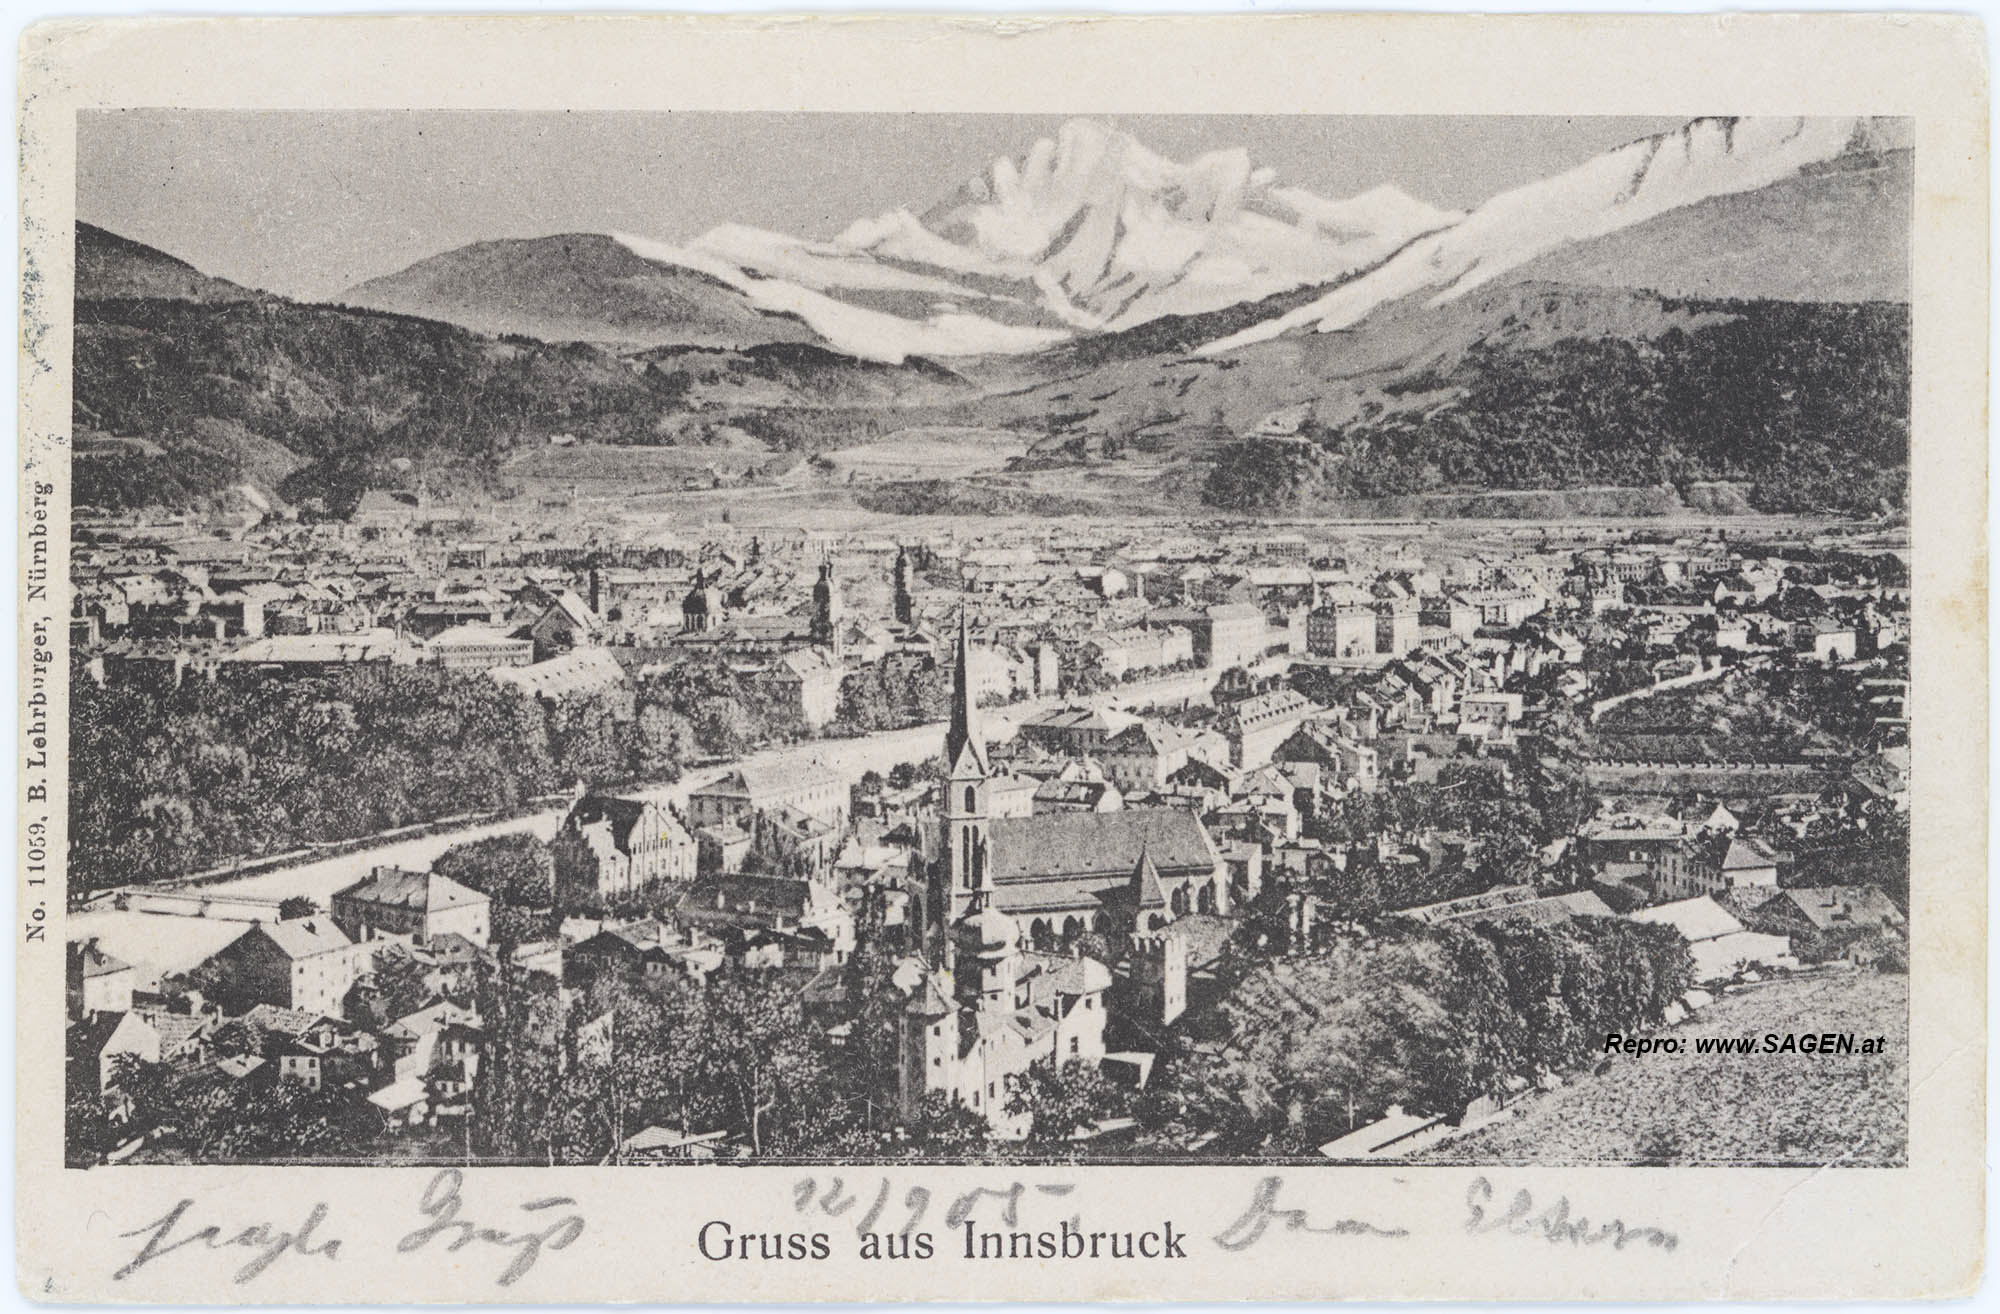 Gruss aus Innsbruck